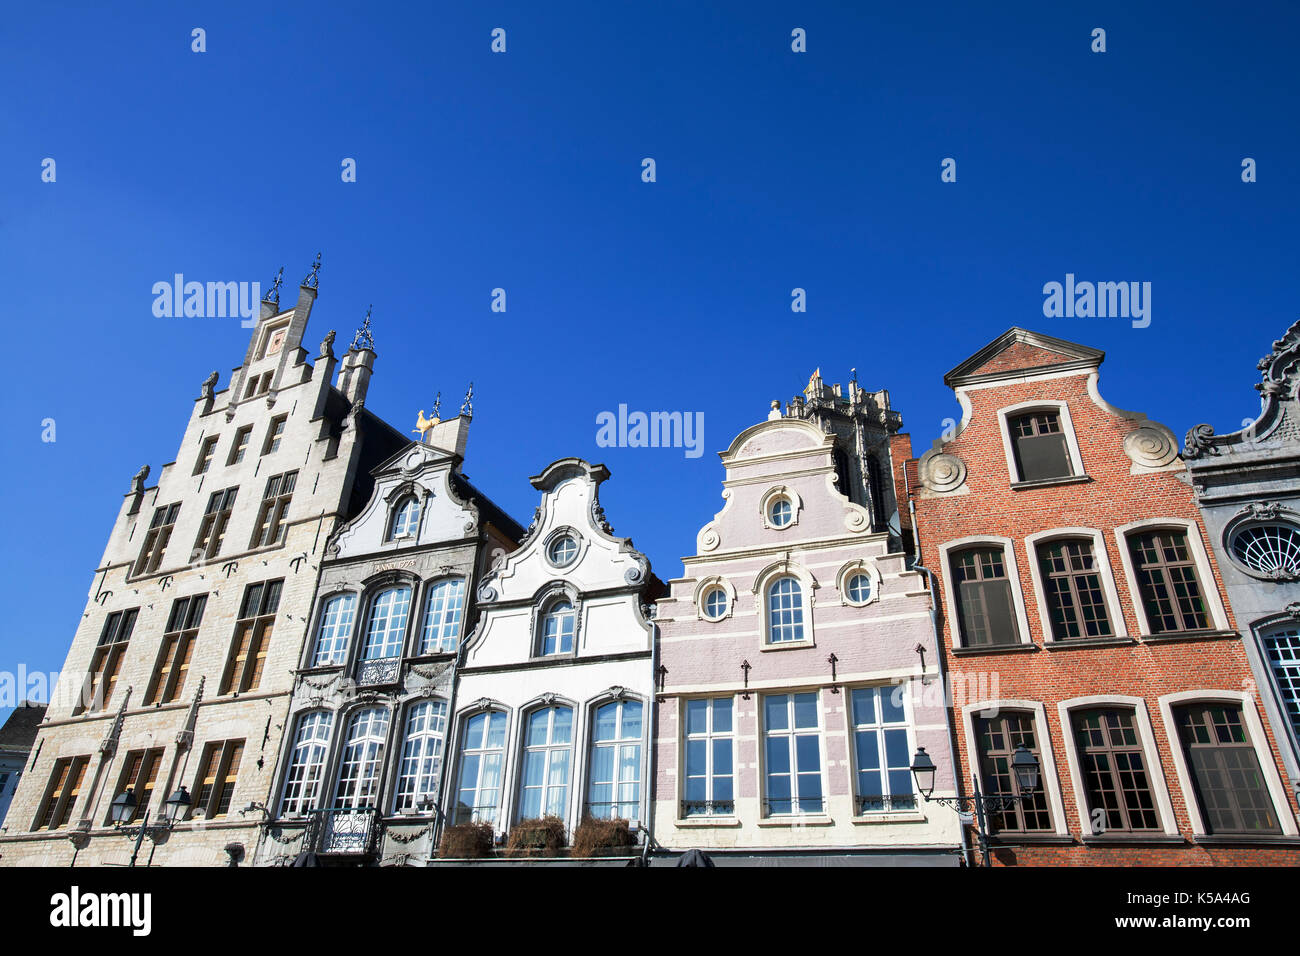 Façade du xviiie siècle, les bâtiments de la Grote Markt (grand place du marché) à Mechelen, Belgique. Un ciel bleu rend les bâtiments encore plus attrayant. Banque D'Images